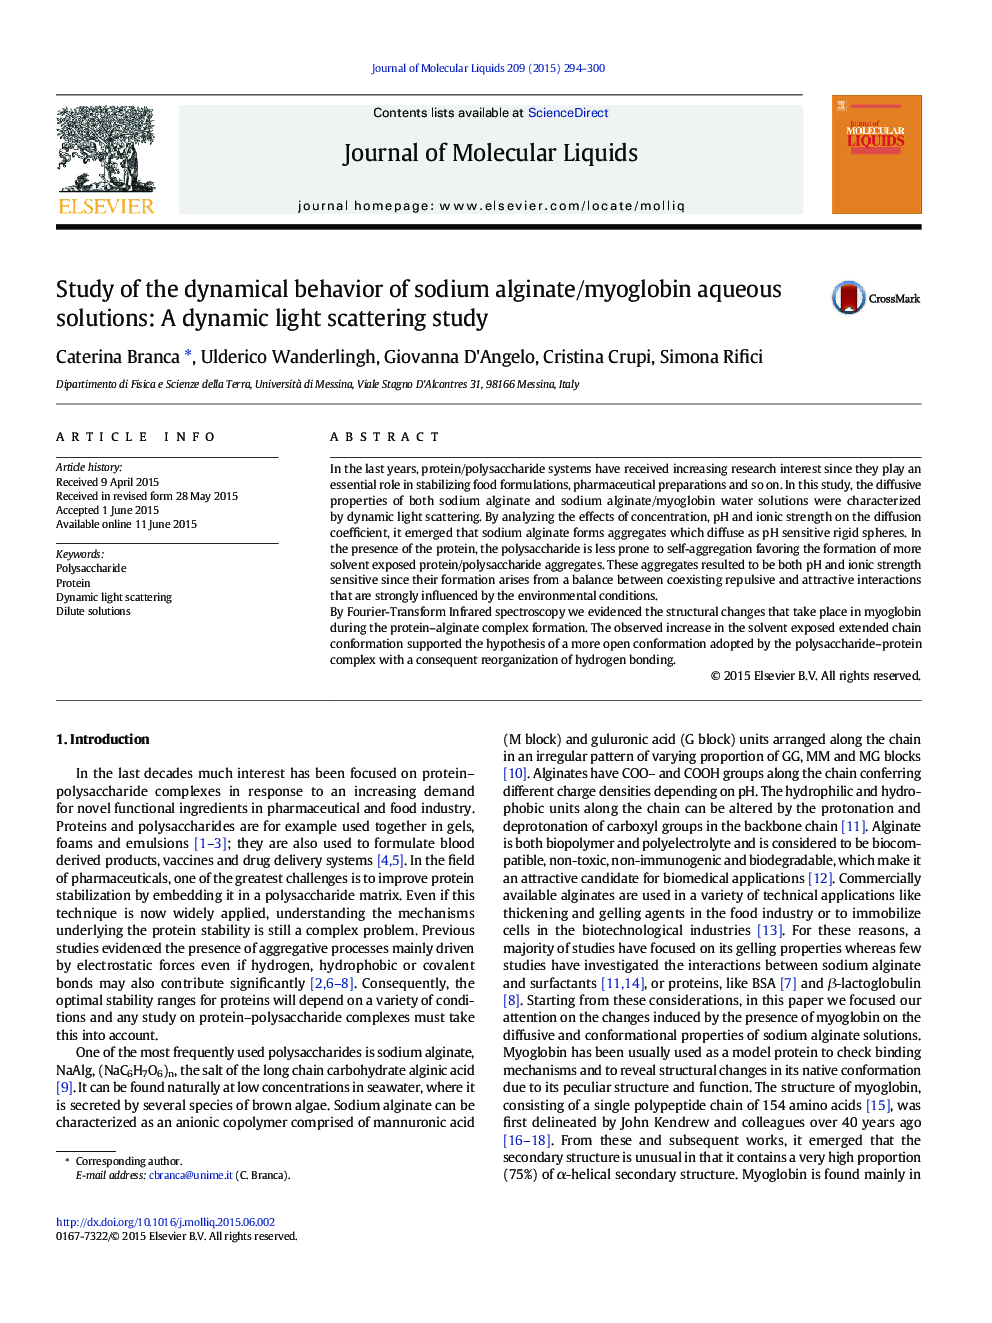 بررسی رفتار دینامیکی آلژینات سدیم / محلول های آبی مایوگلوبین: مطالعه پراکندگی نور پویا 